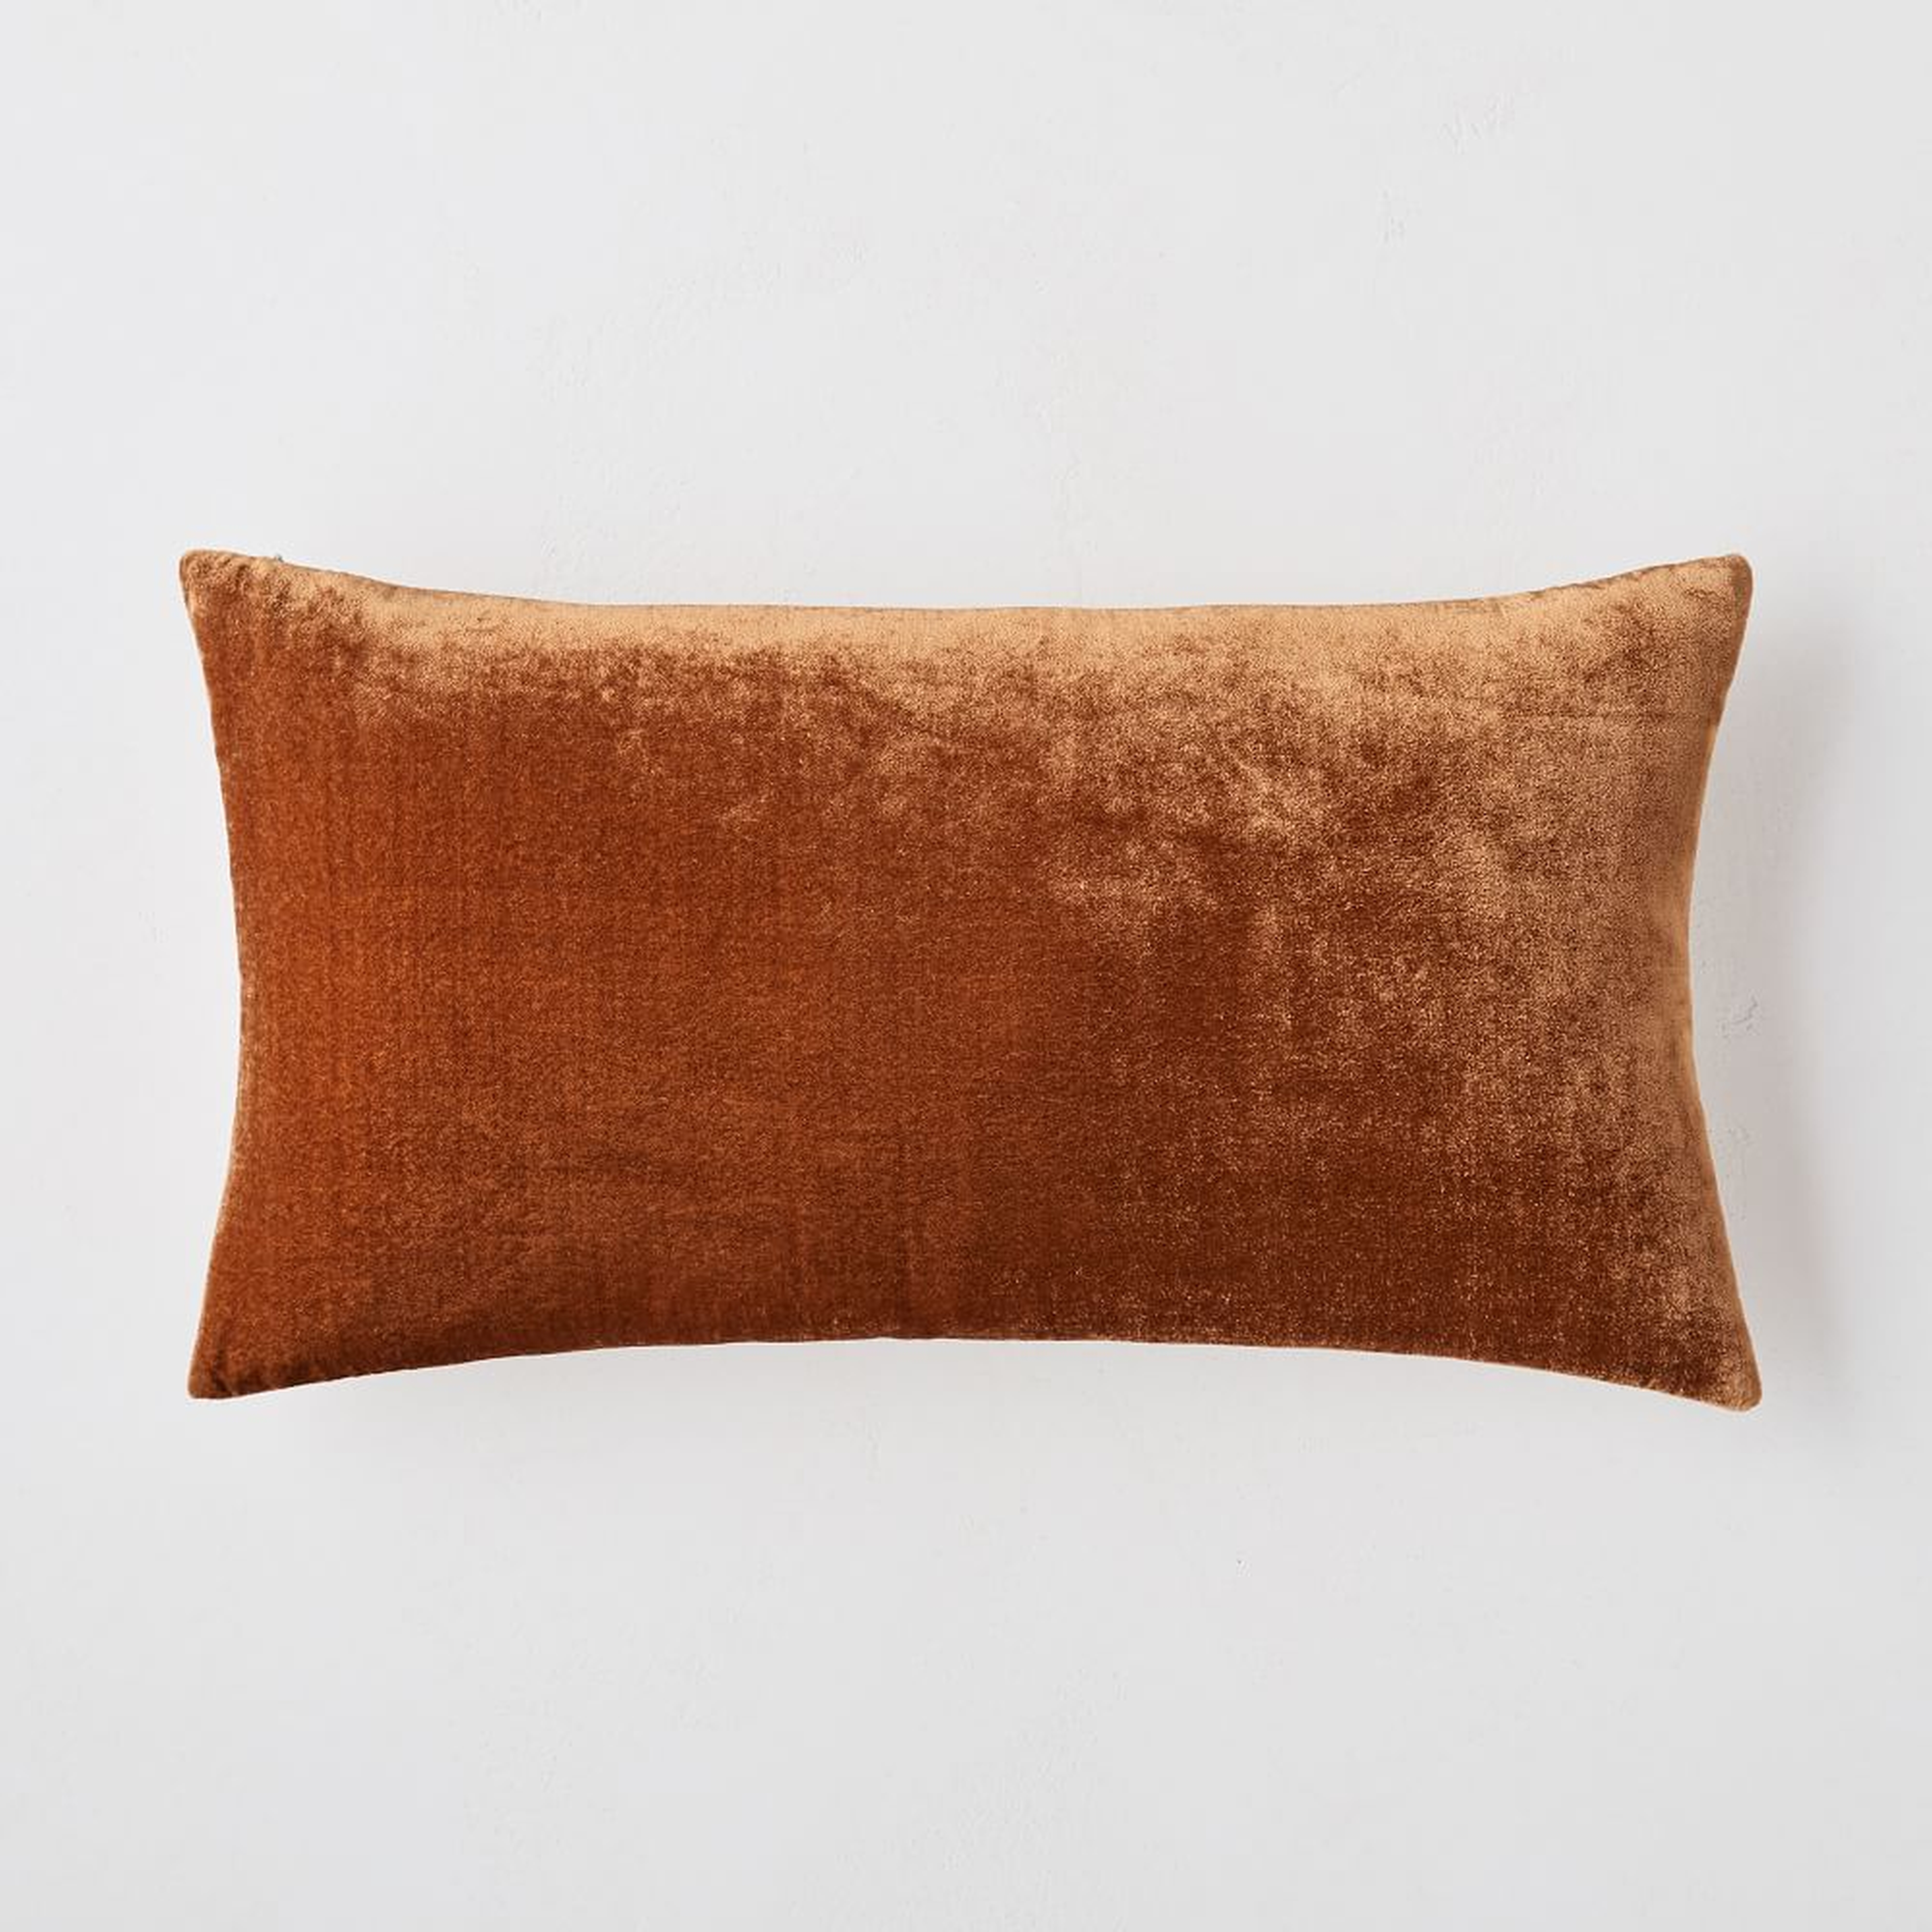 Lush Velvet Pillow Cover, 12"x21", Copper - West Elm